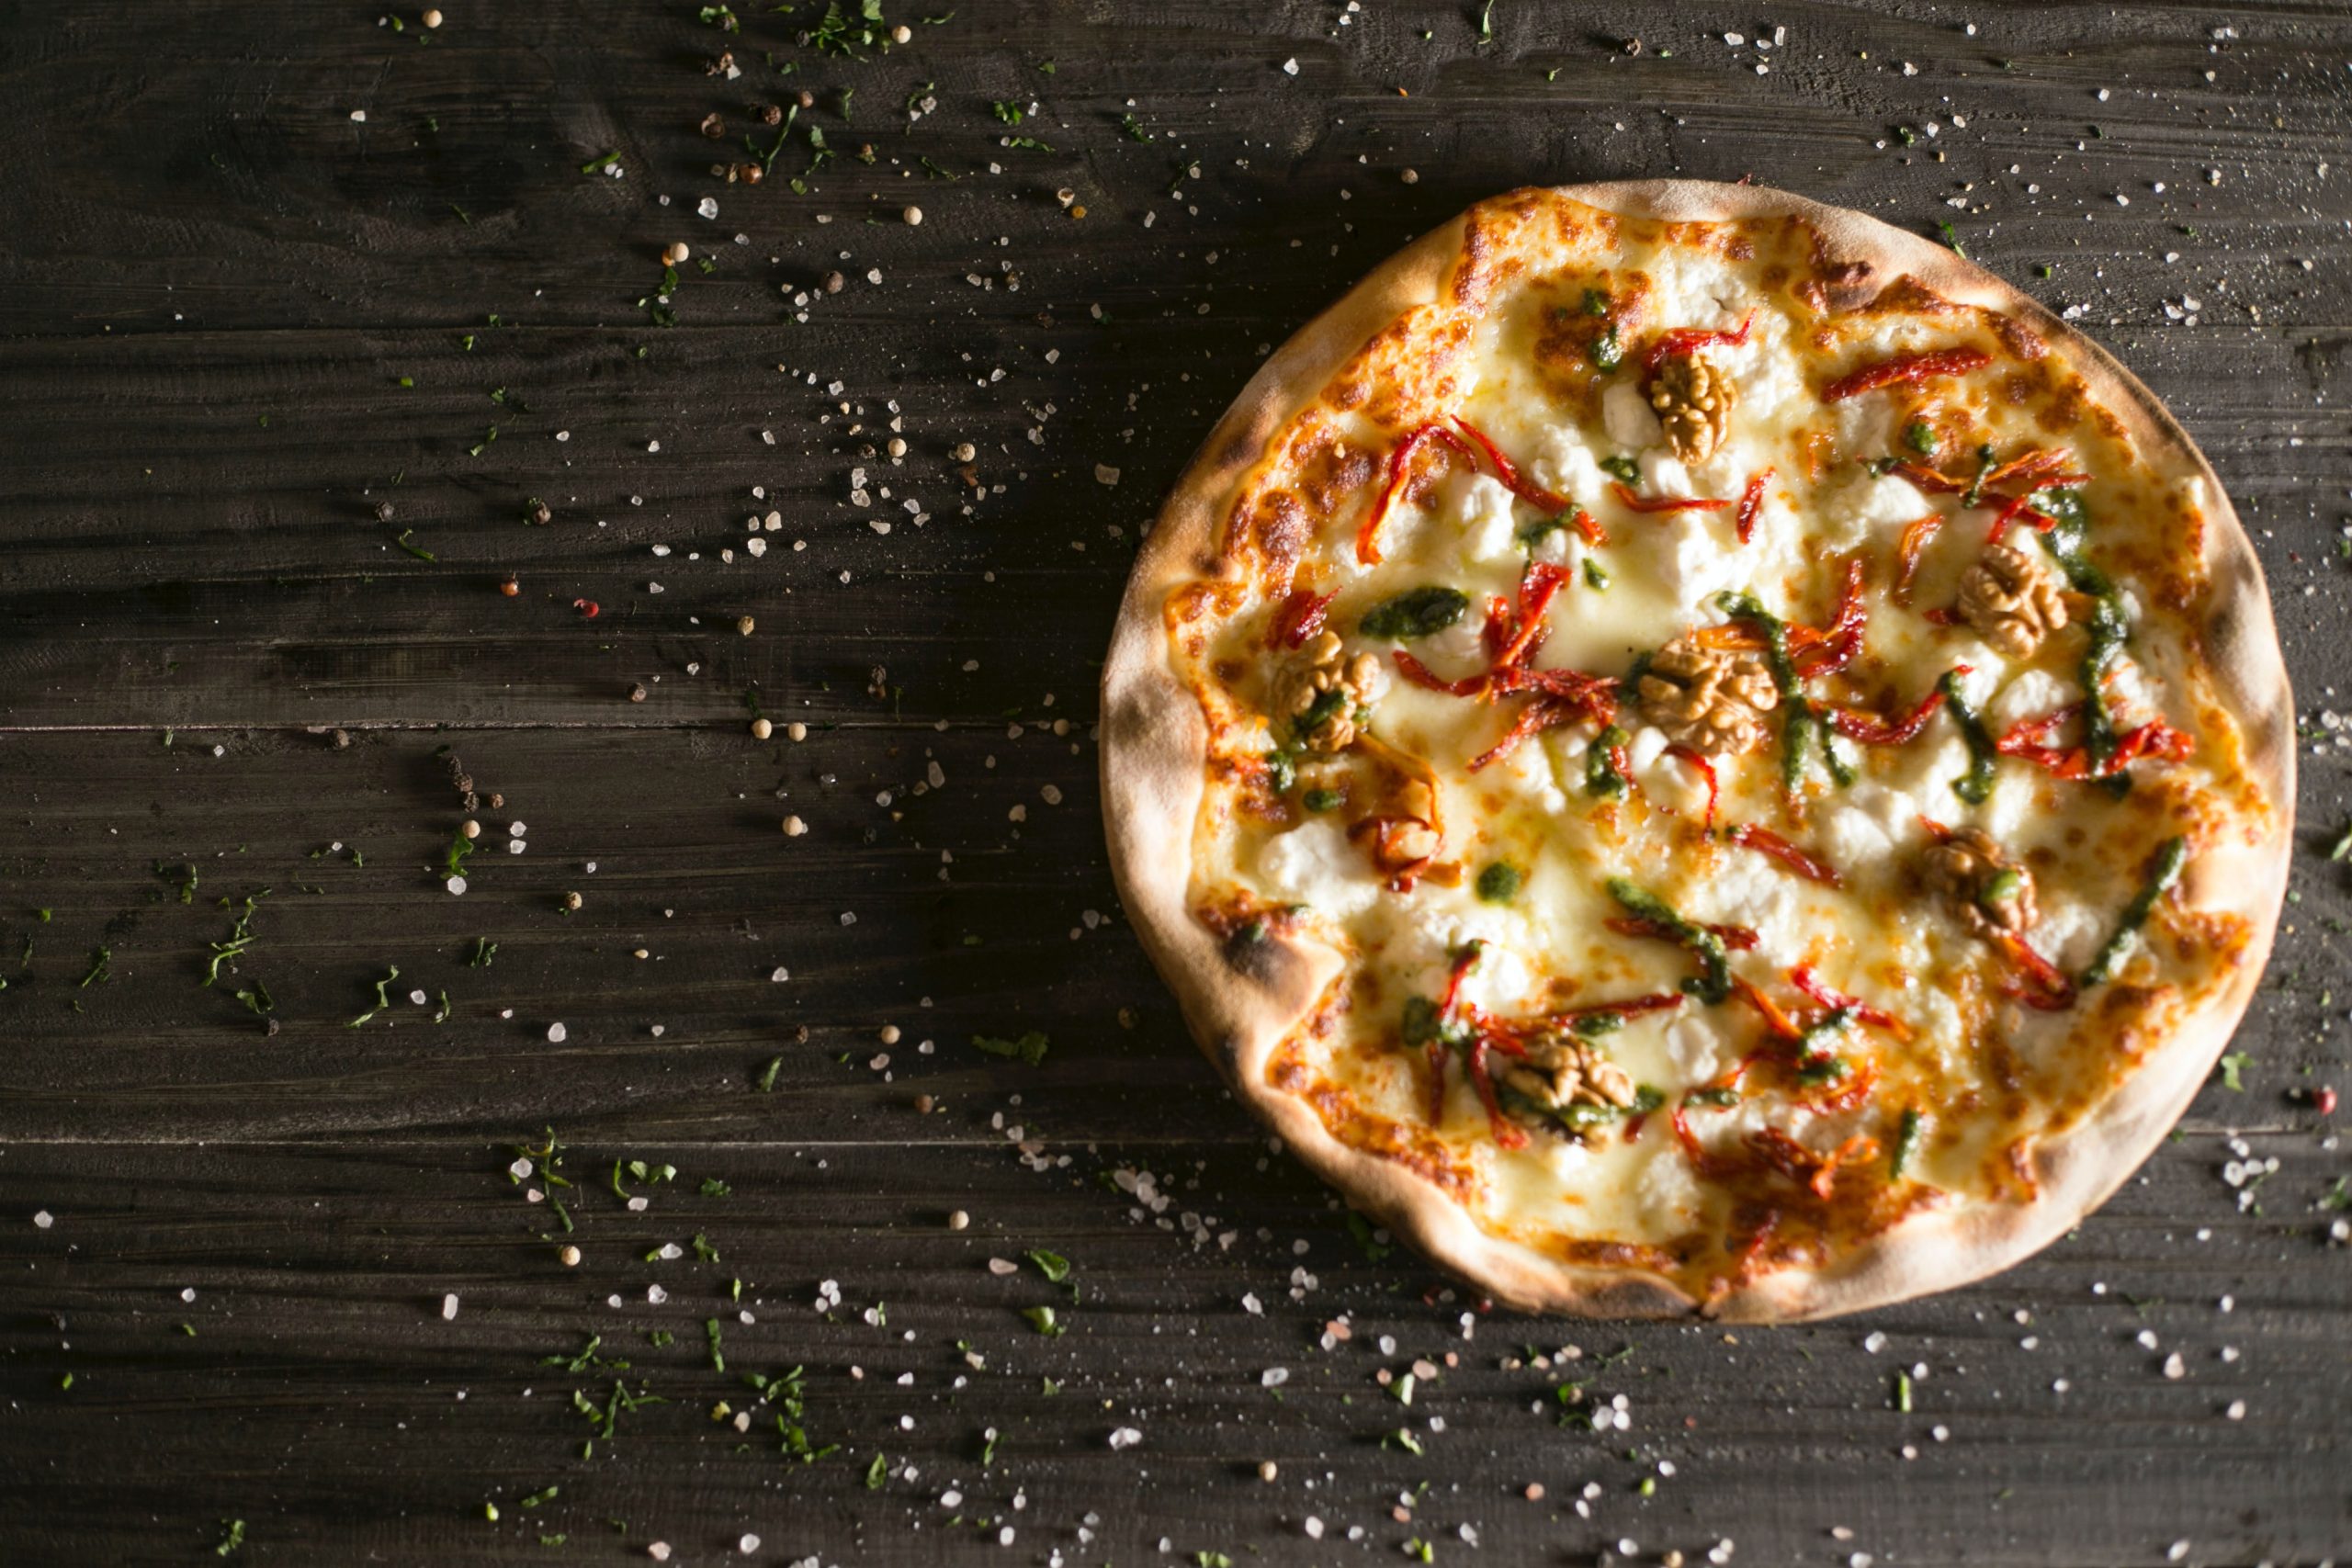 How to locally prepare Margherita Pizza – Italian classic dish